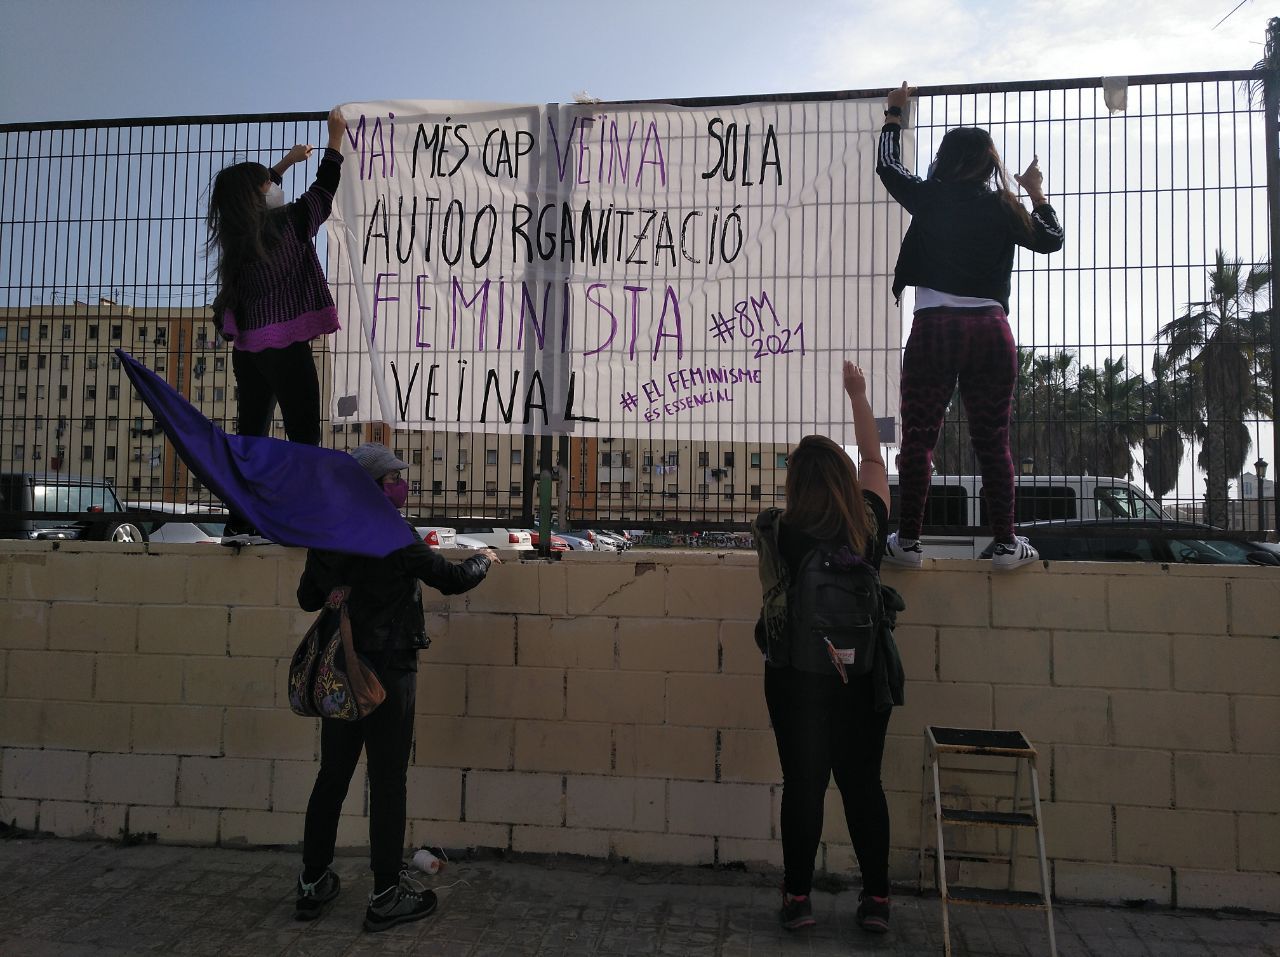 La Assemblea Feminista de València inicia los actos del 8 M